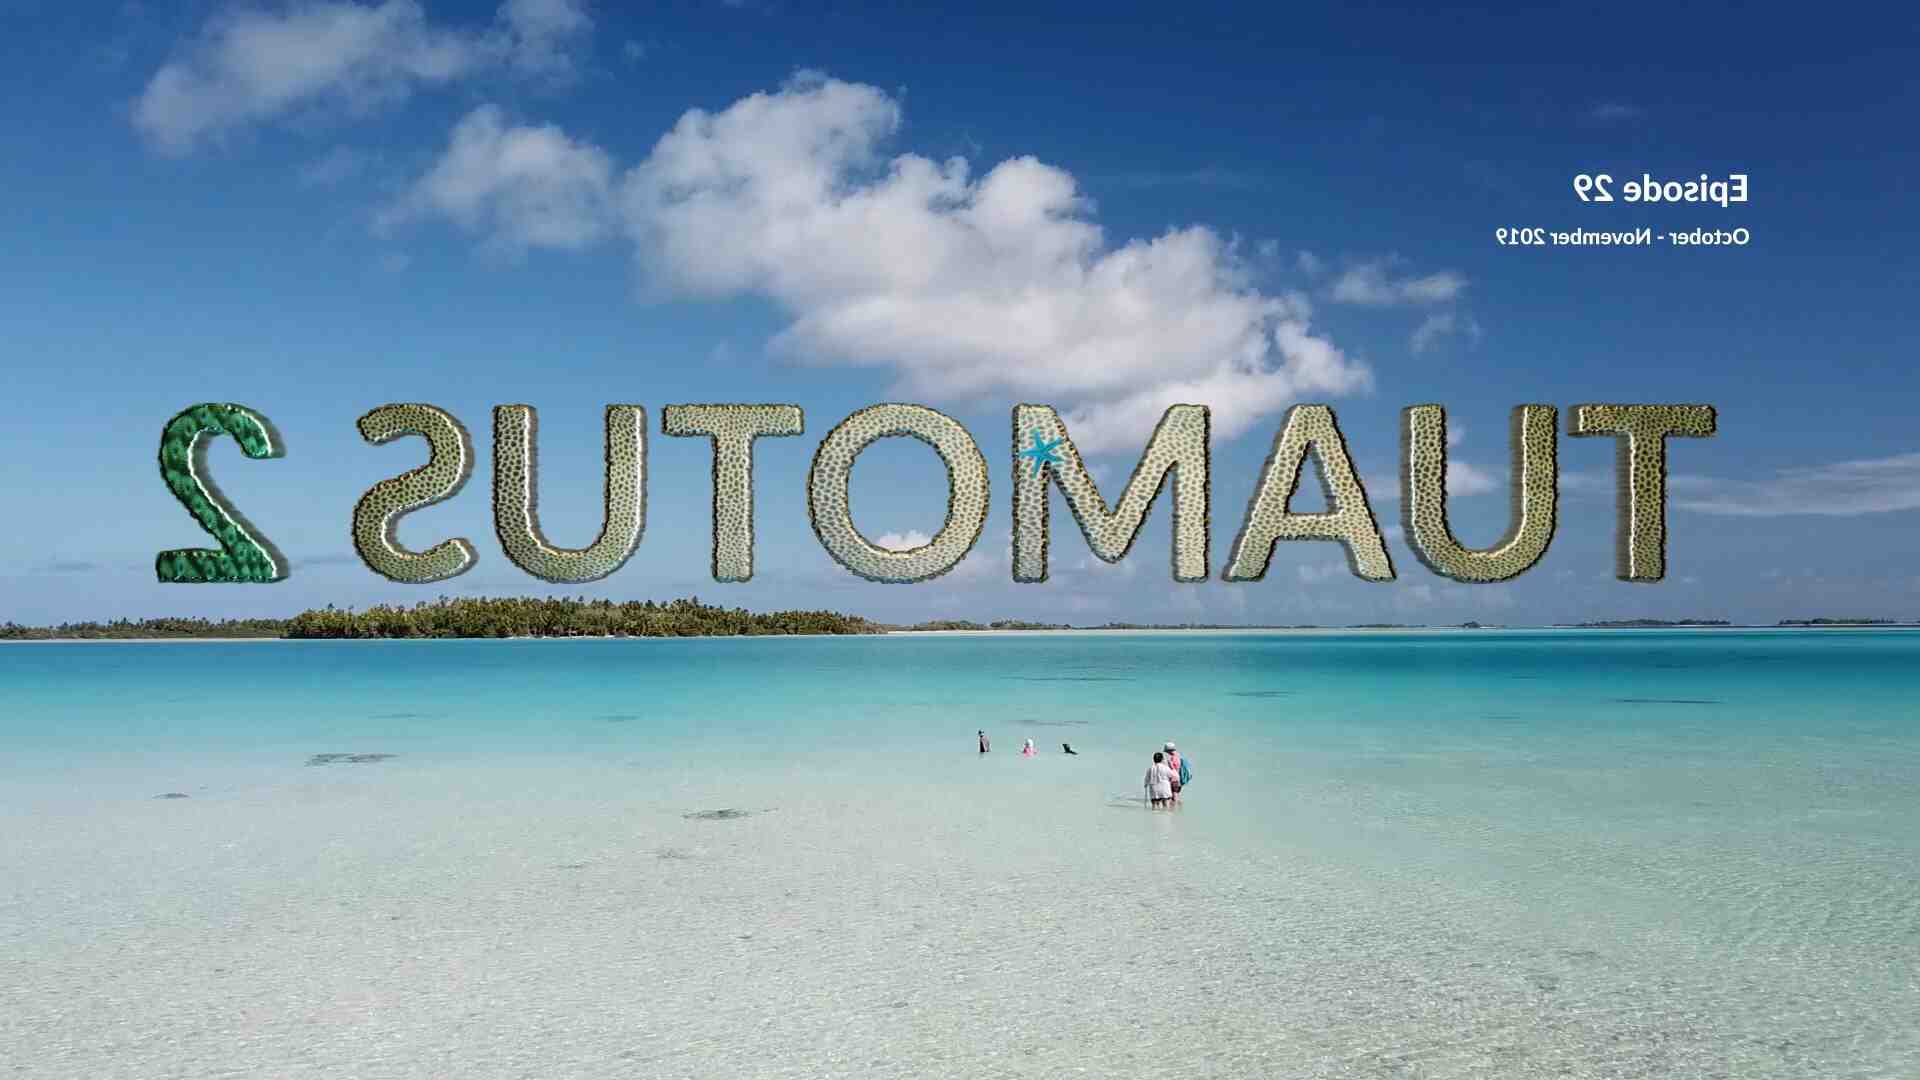 Polinezya'ya bir gezi nasıl organize edilir?